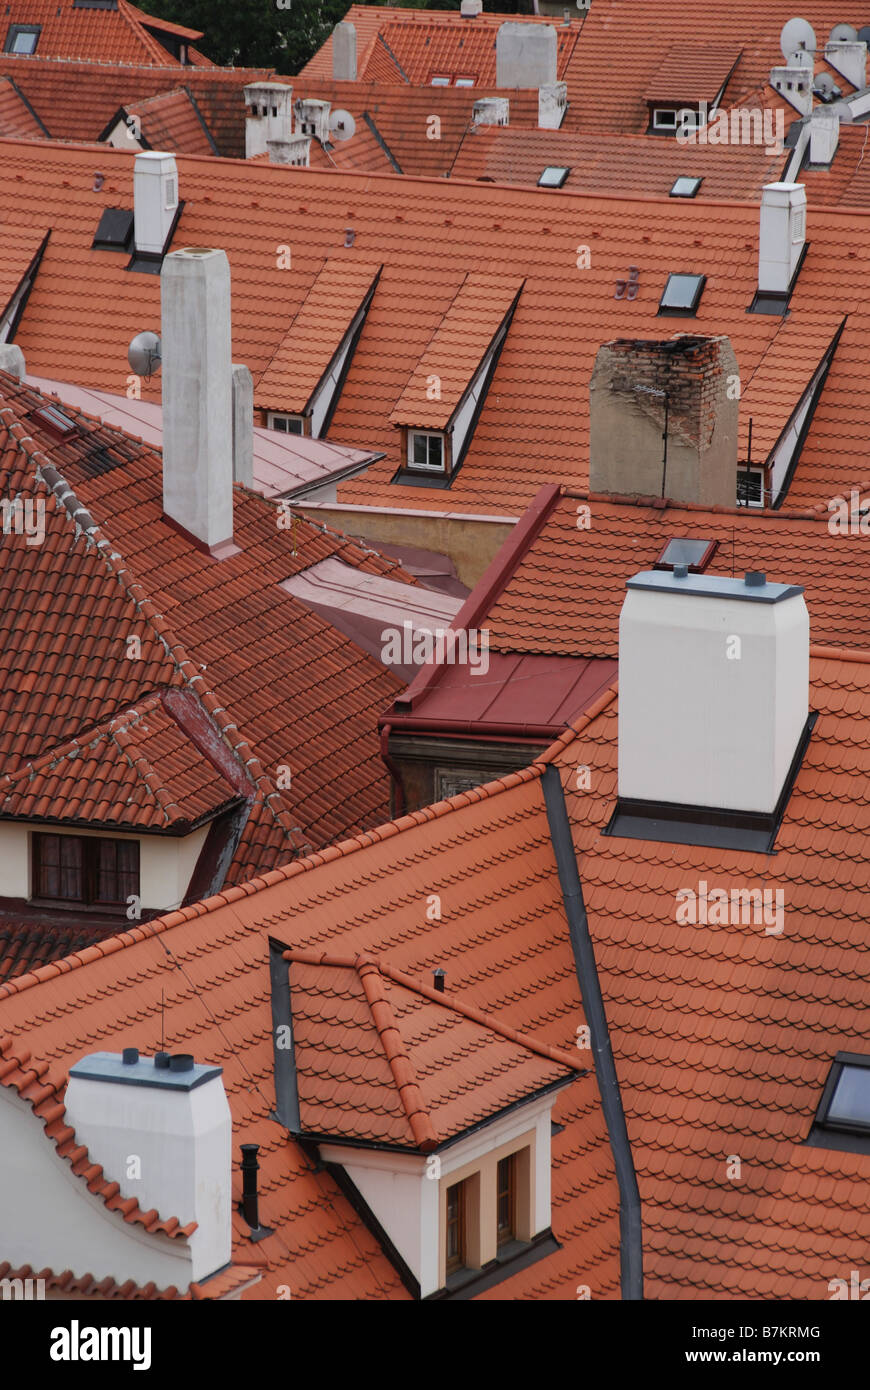 Praga sui tetti di tegole rosse Foto Stock